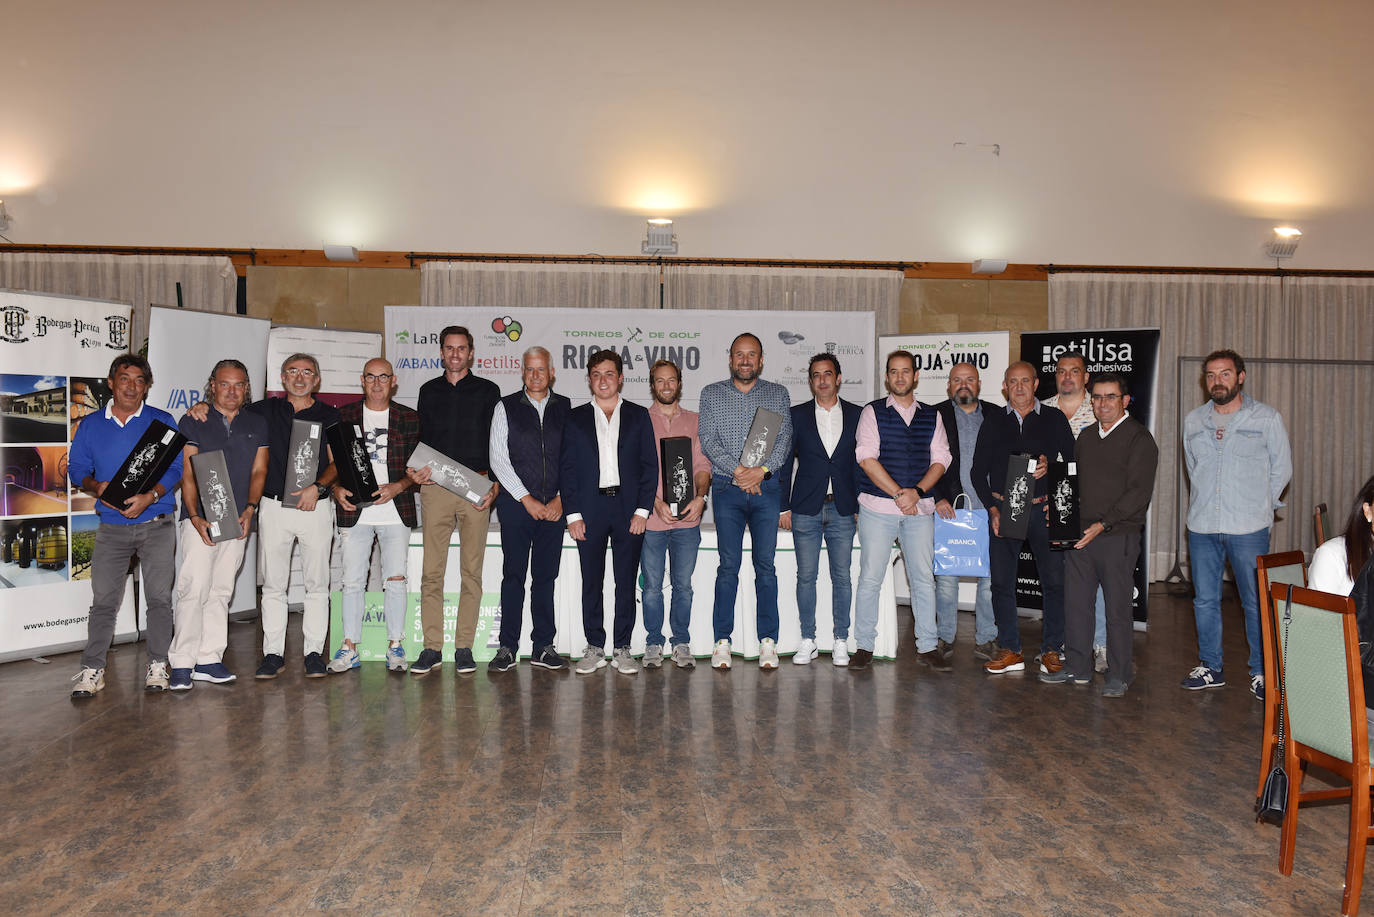 Fotos: Cata y entrega de premios del torneo de golf de Bodegas Perica